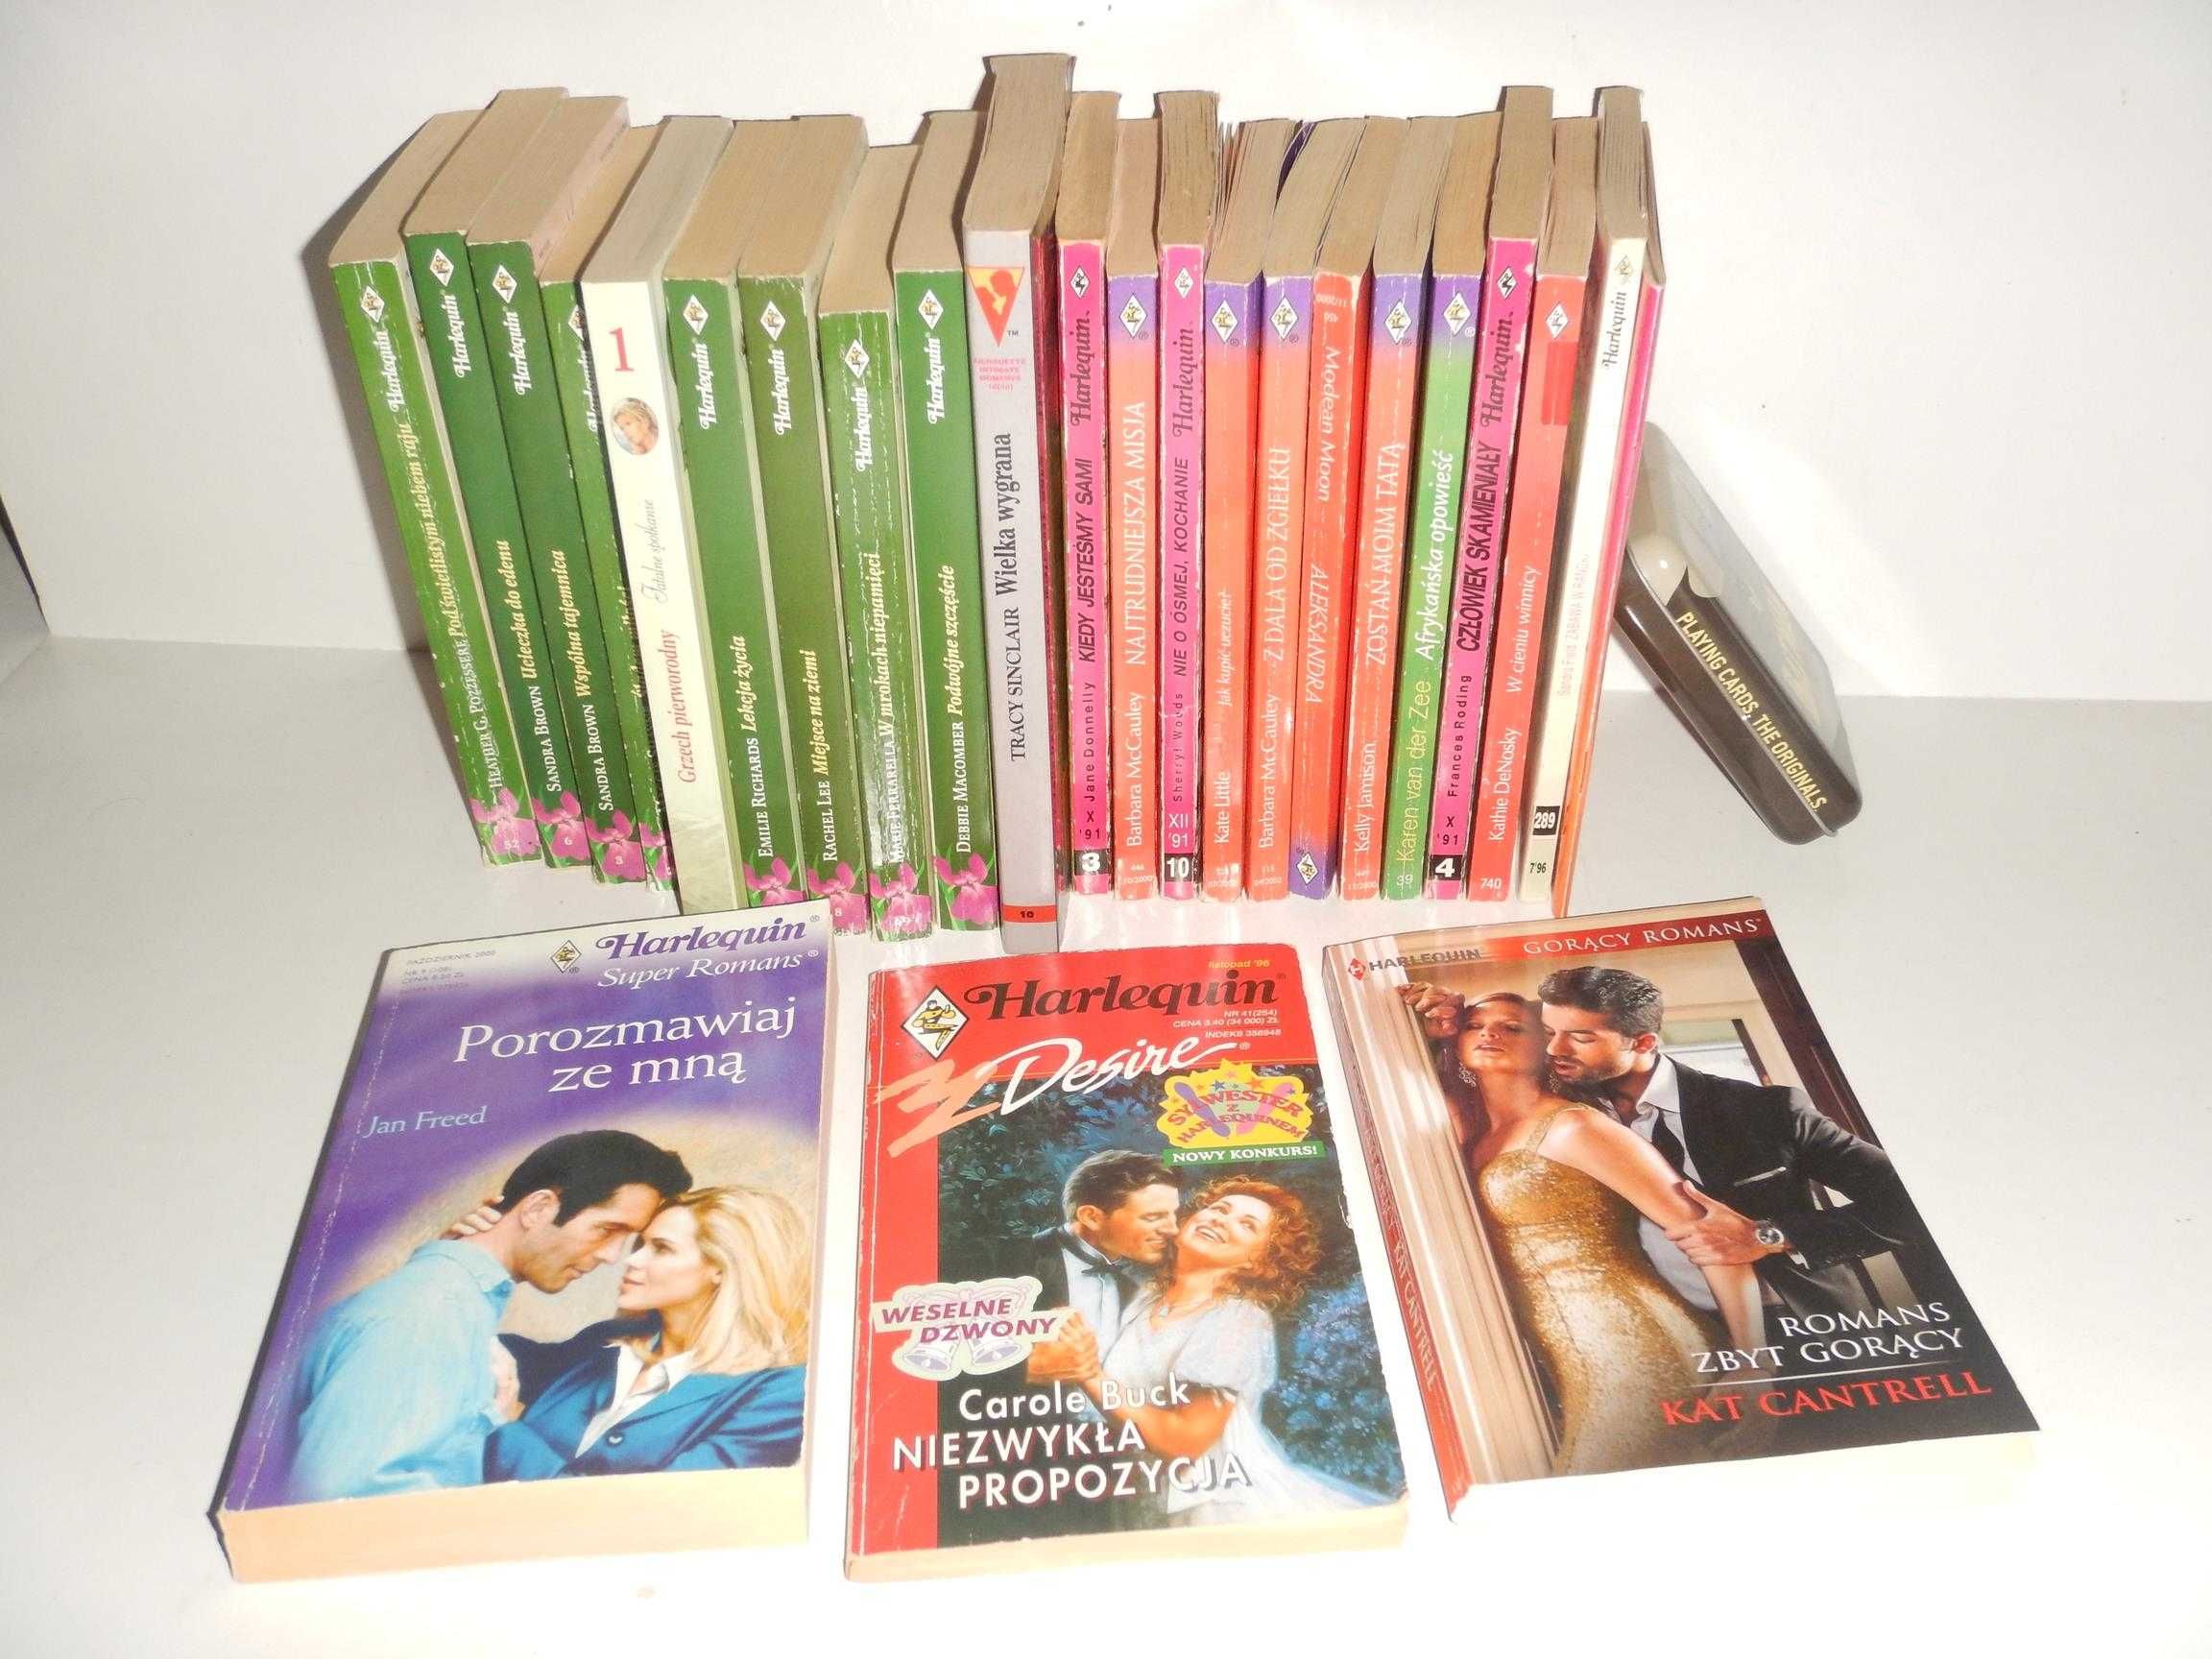 Harlequin książki romantyczne - przygodowe 24 sztuki super stan